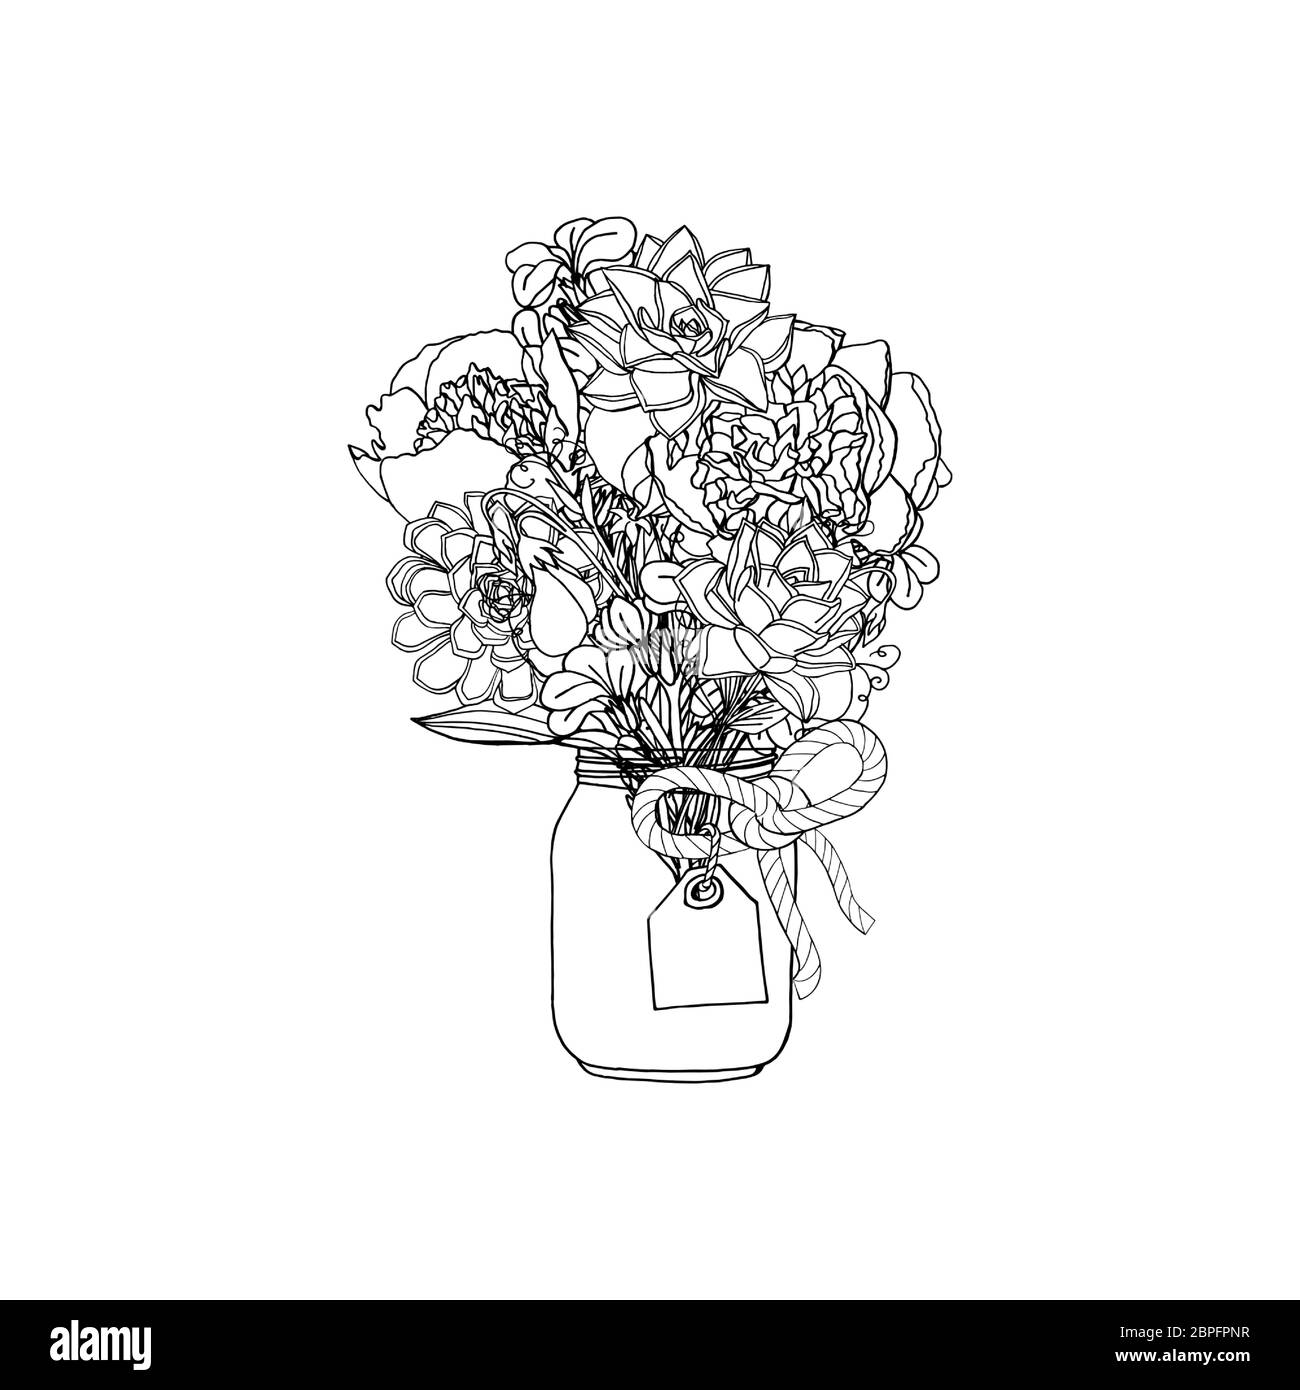 Handgezeichnetes Bouquet im Doodle-Stil aus verschiedenen Blumen, saftig, Pfingstrose, Stockblume, süßer Erbse Stock Vektor